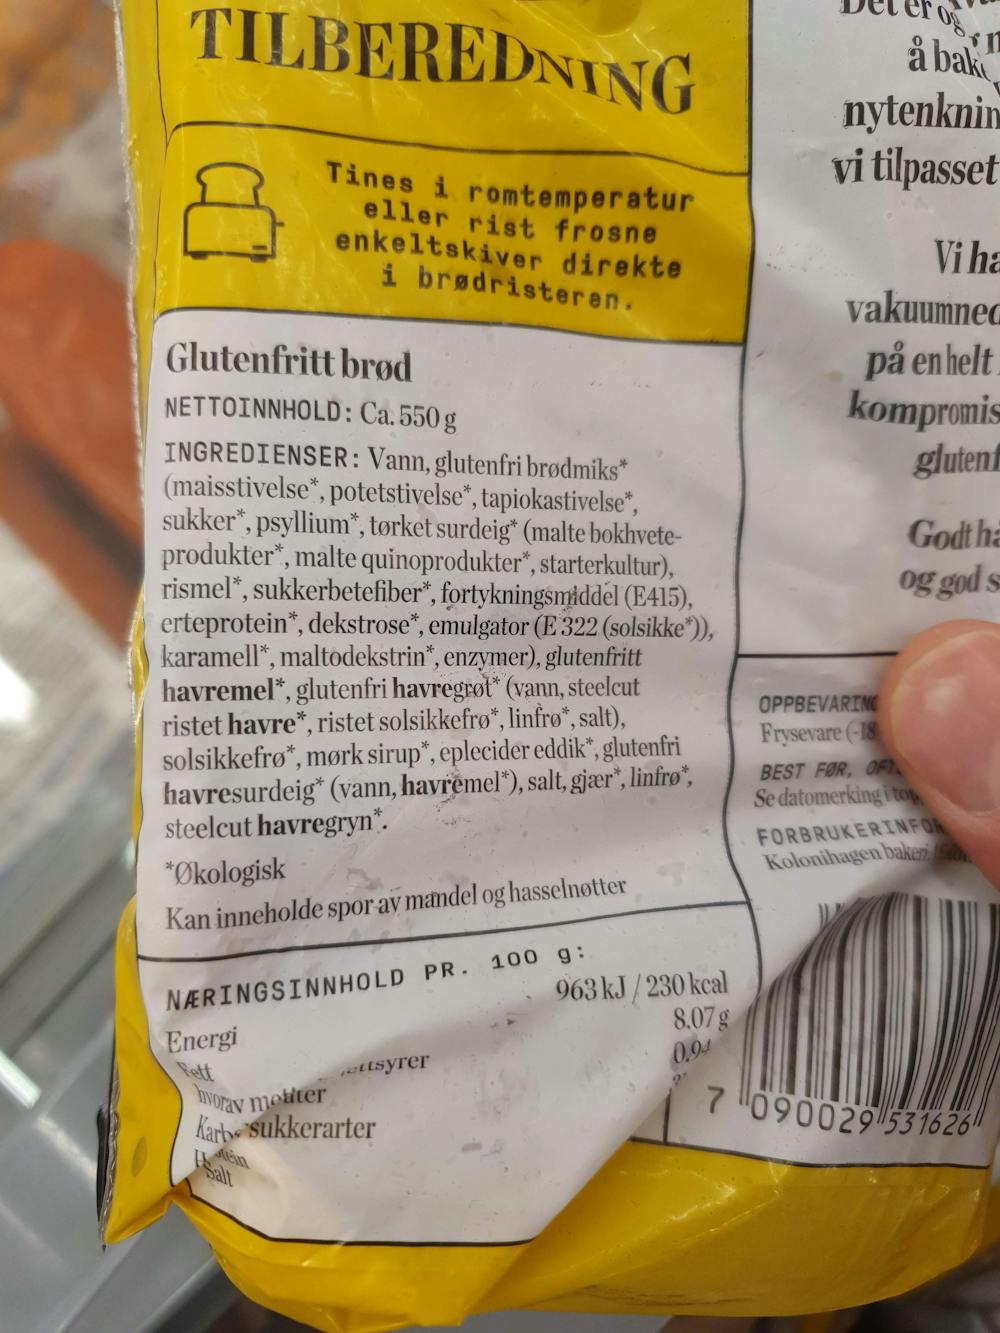 Ingrediensliste - Glutenfritt brød, Kolonihagen